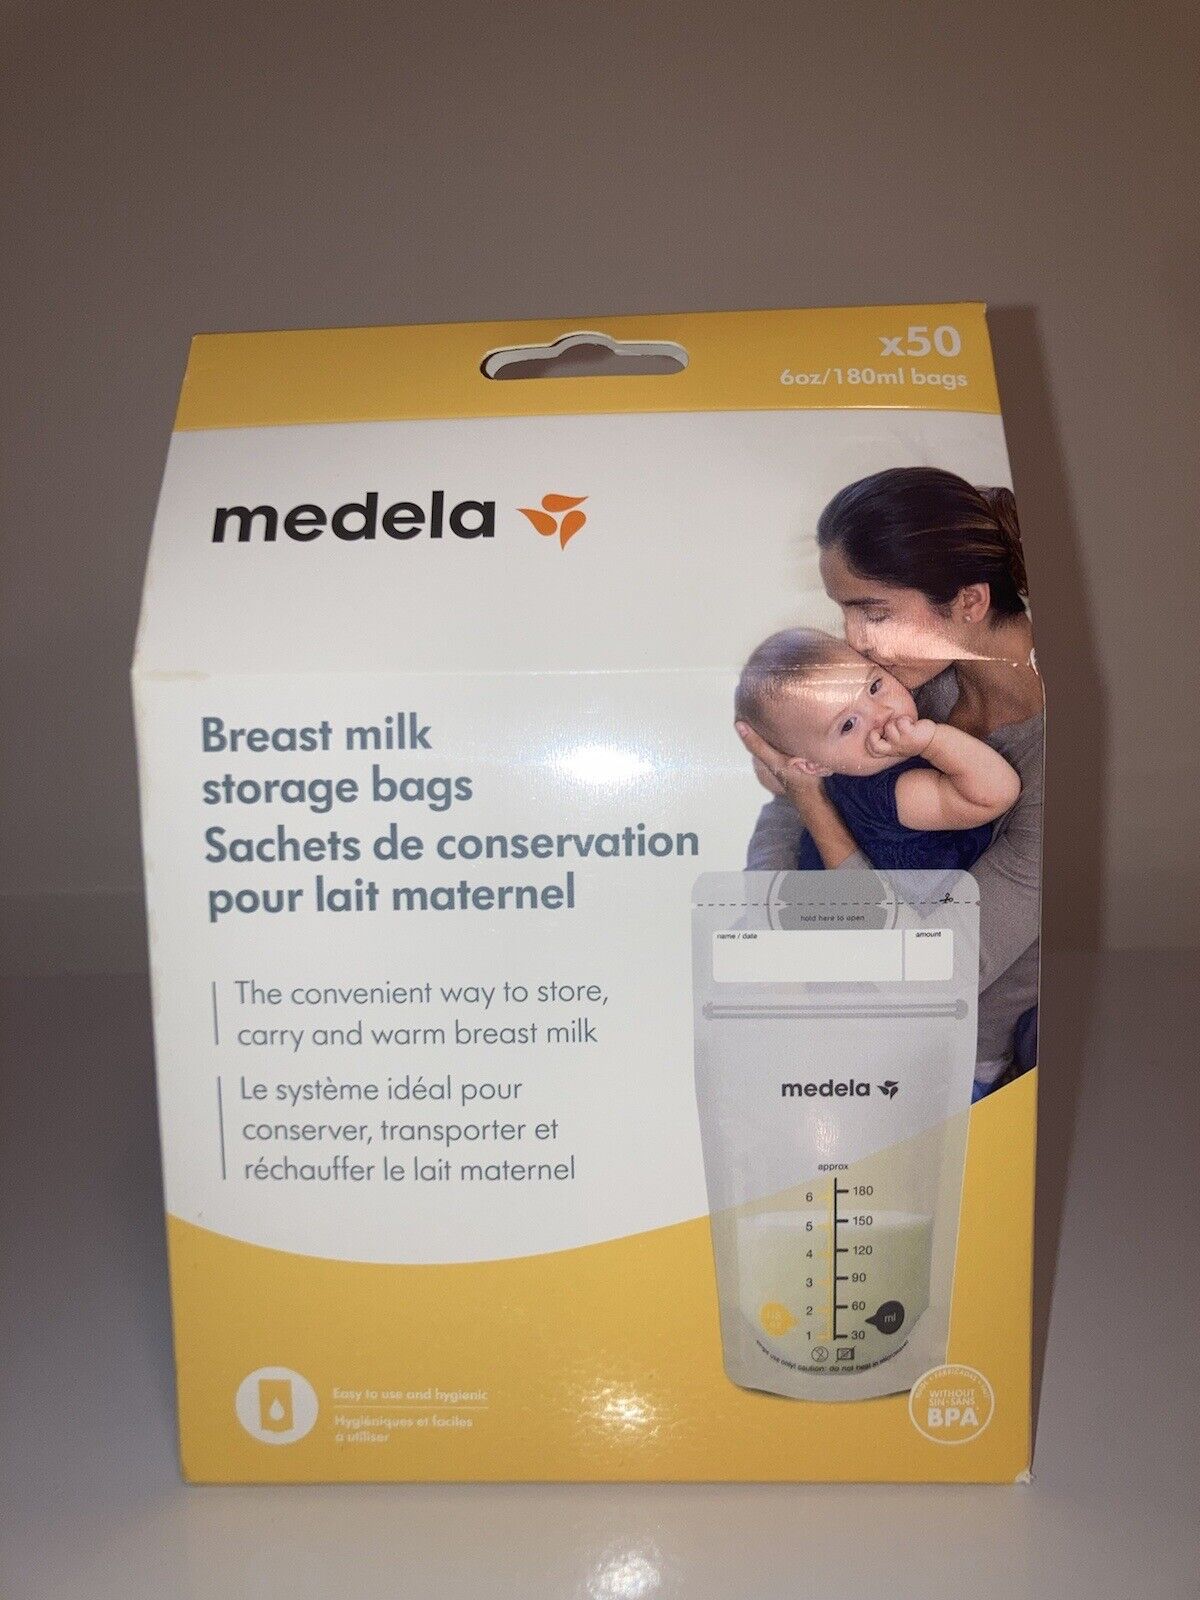 medela breast milk storage bags 50 Count 6 oz/180ml bags BPA Free